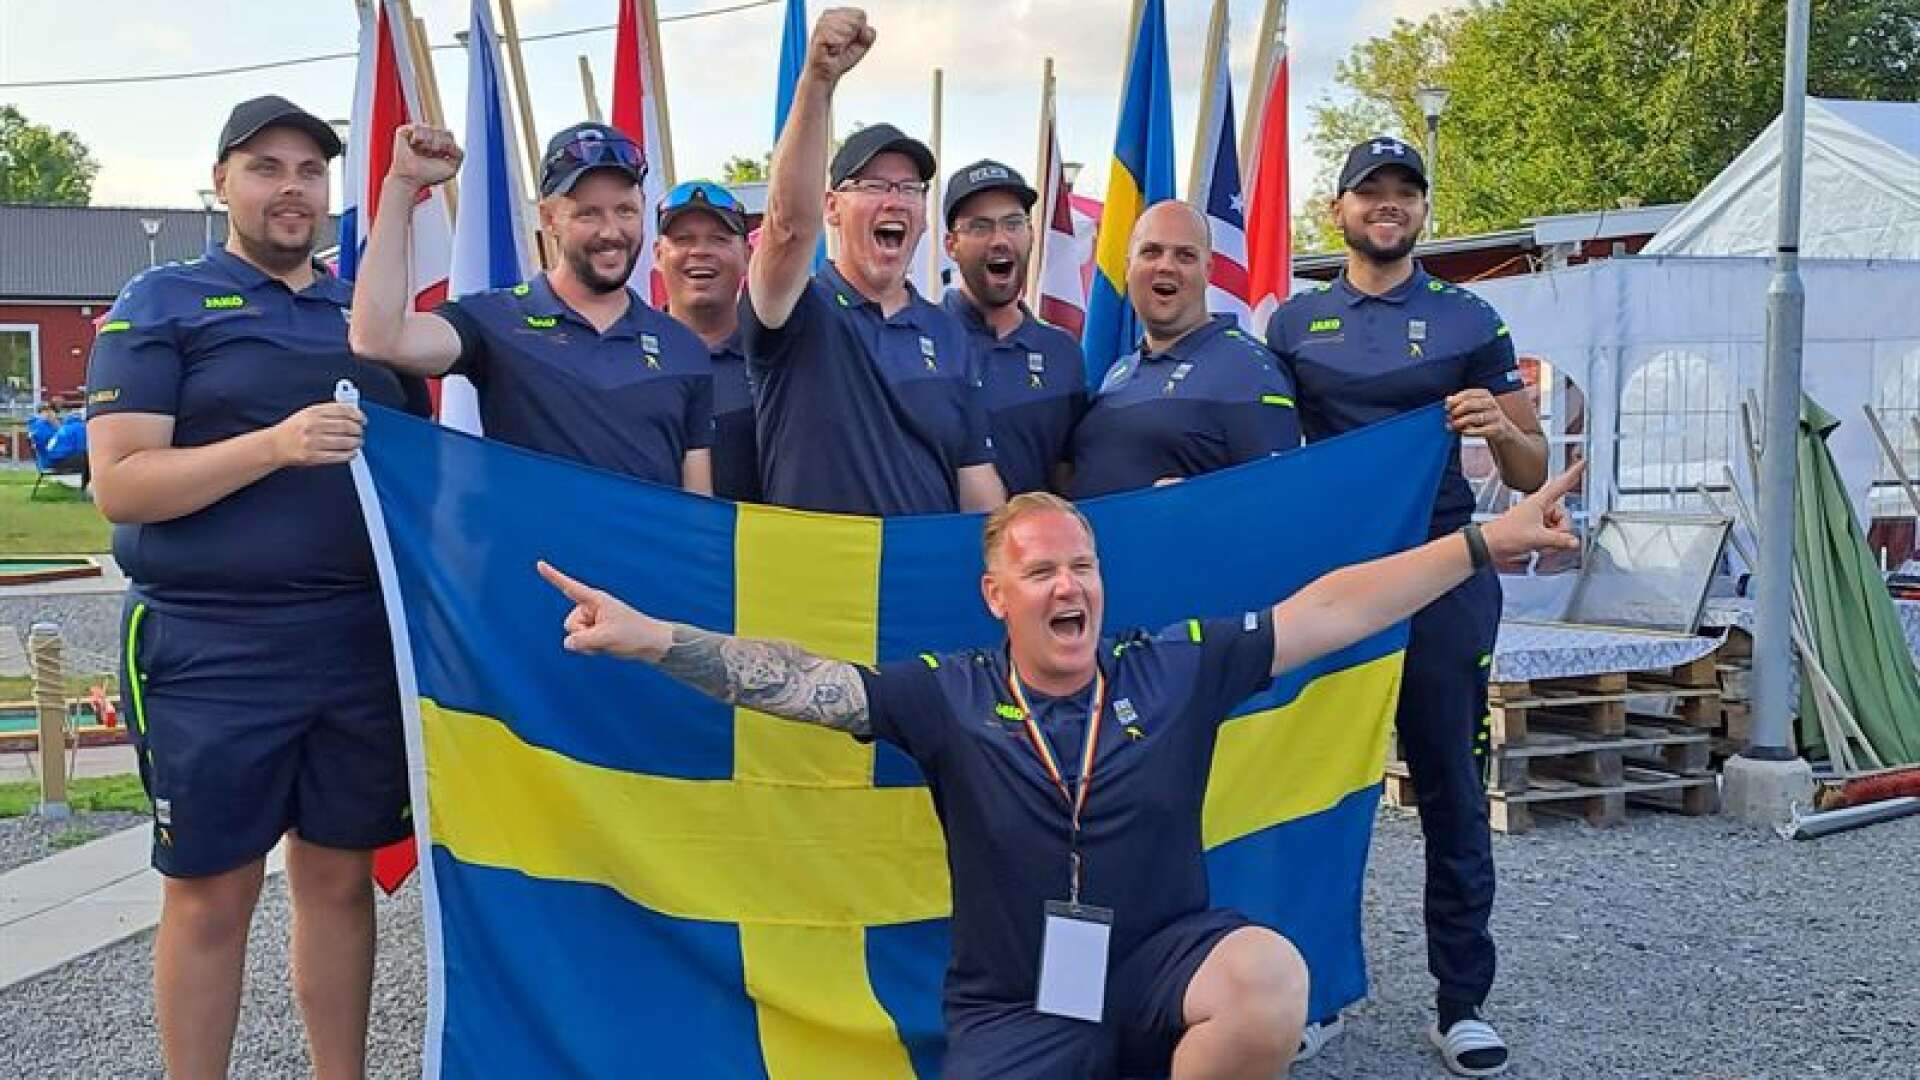 Sveriges herrlag tog VM-guld i bangolf på onsdagen och Skoghalls Ulf Kristiansson, som står i mitten med höjd knuten näve, följde upp med individuellt guld på torsdagen.